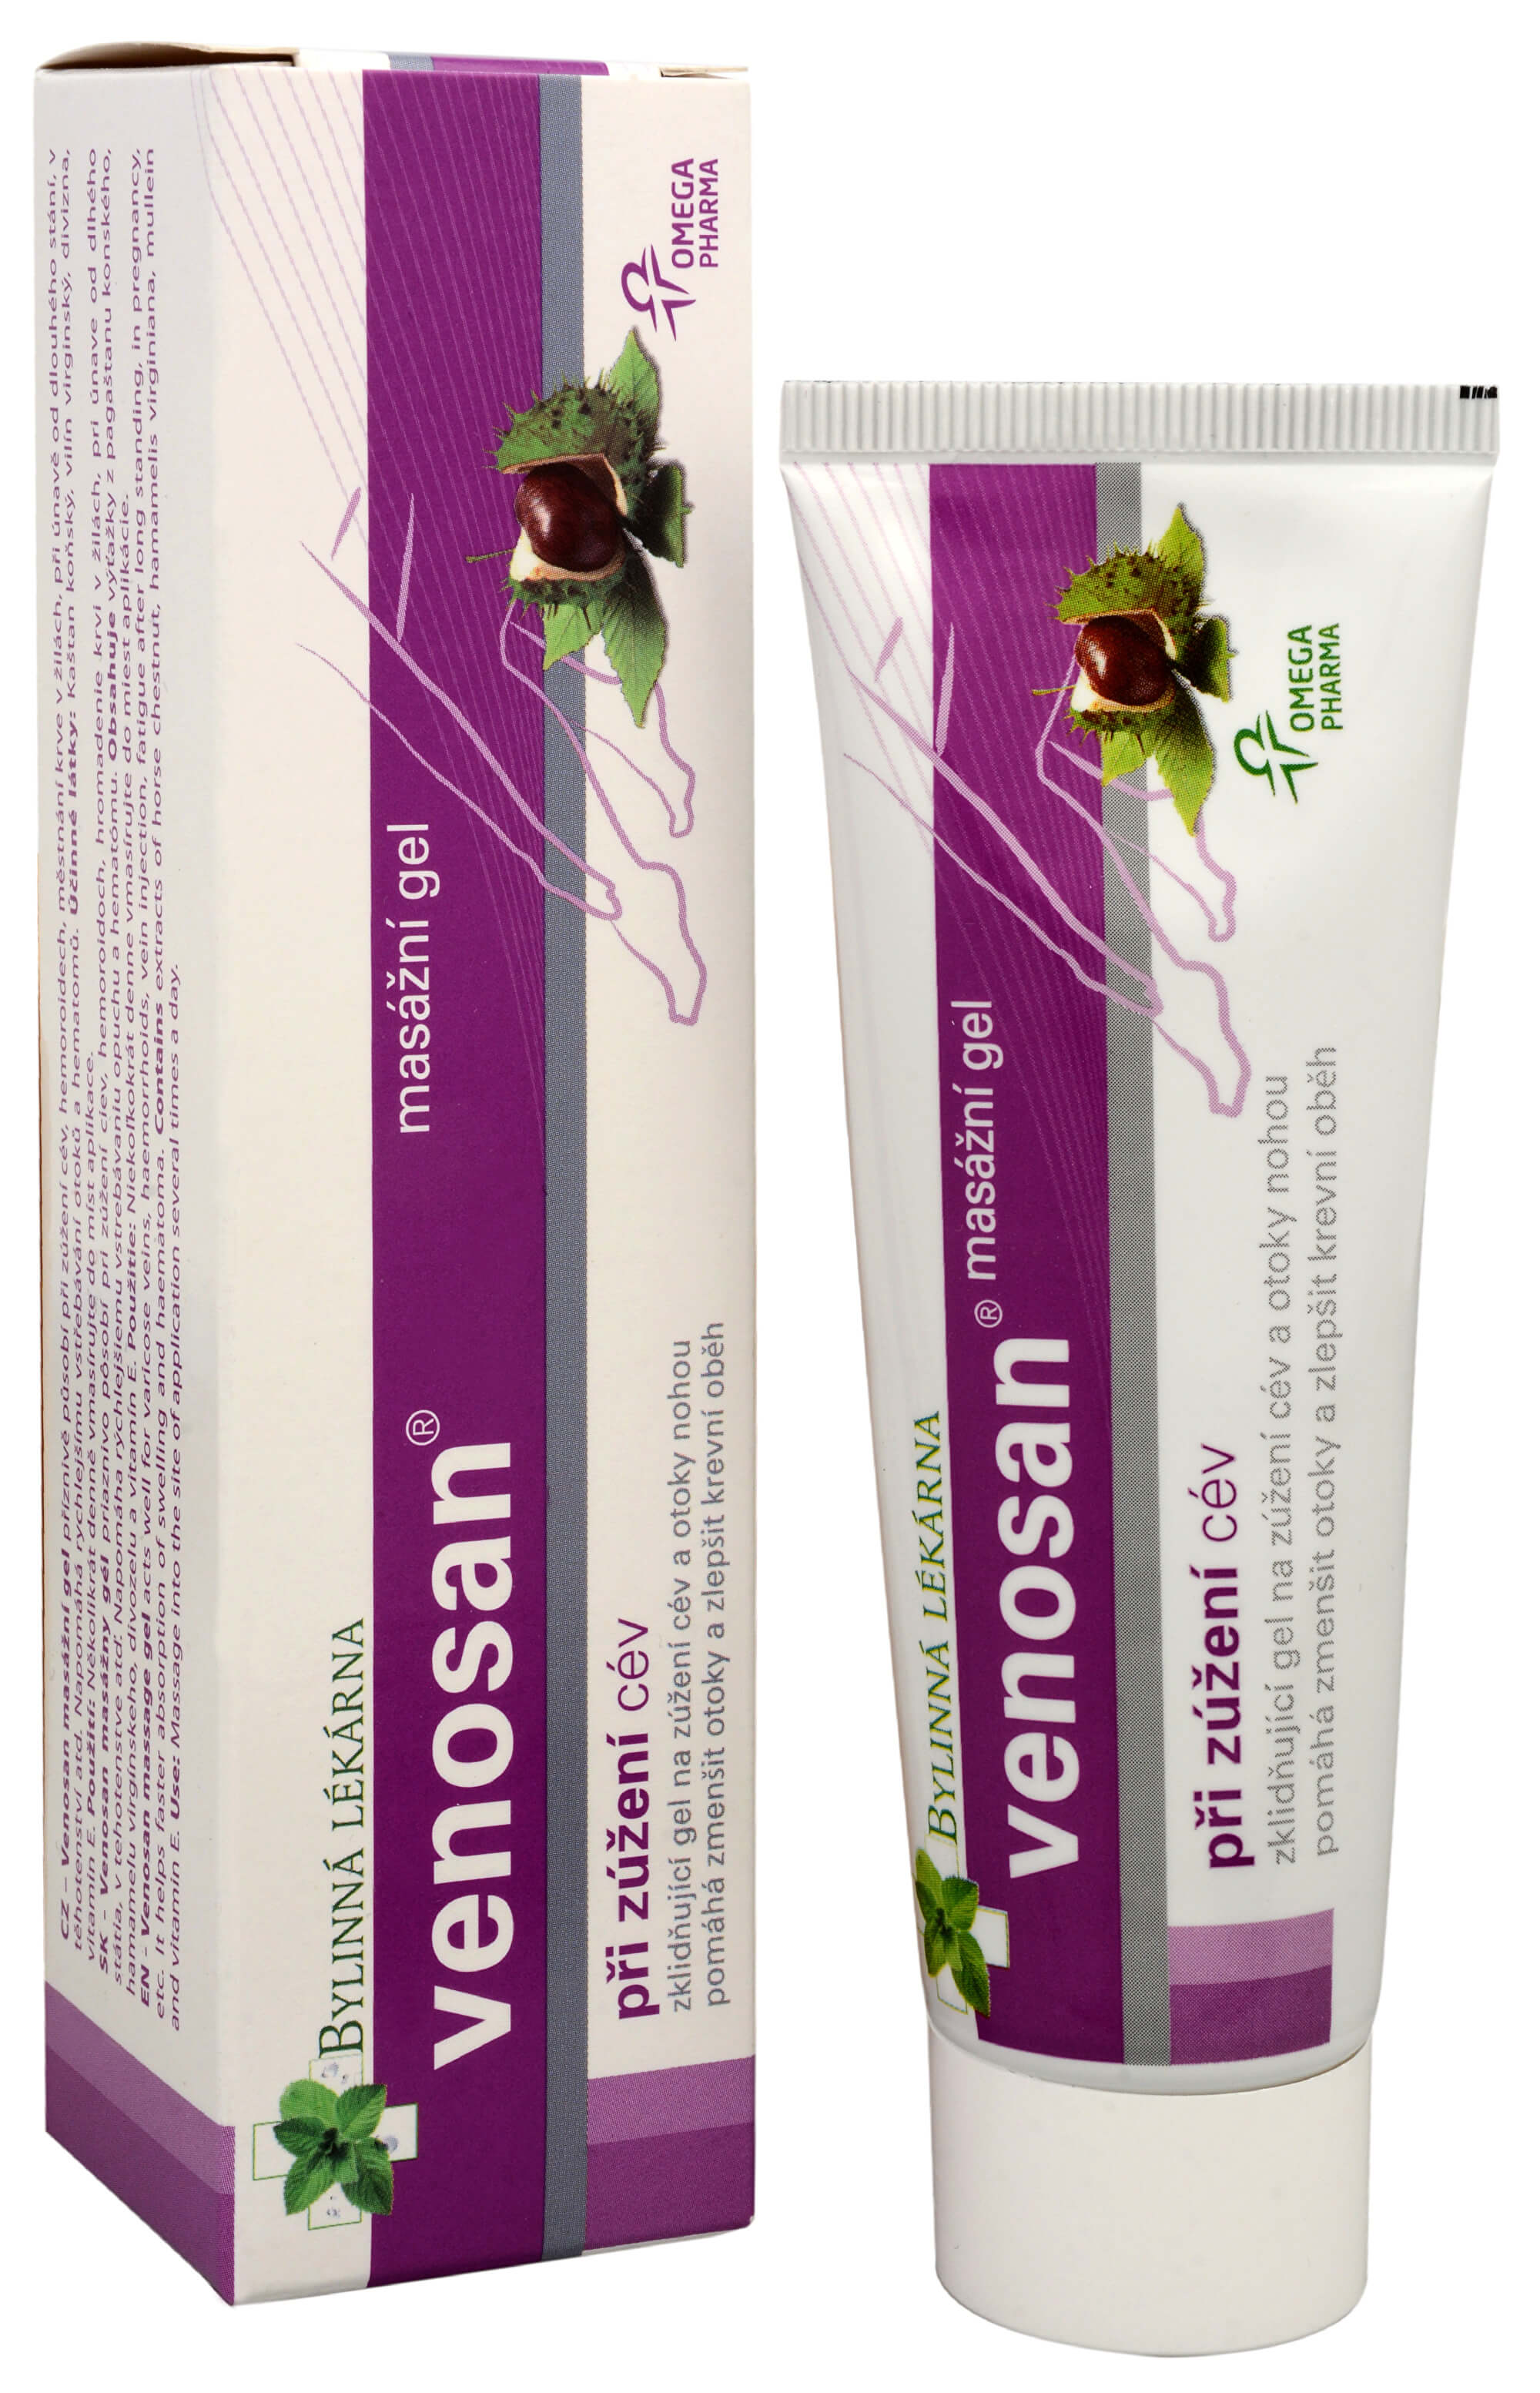 Zobrazit detail výrobku Omega Pharma Venosan masážní gel 50 g